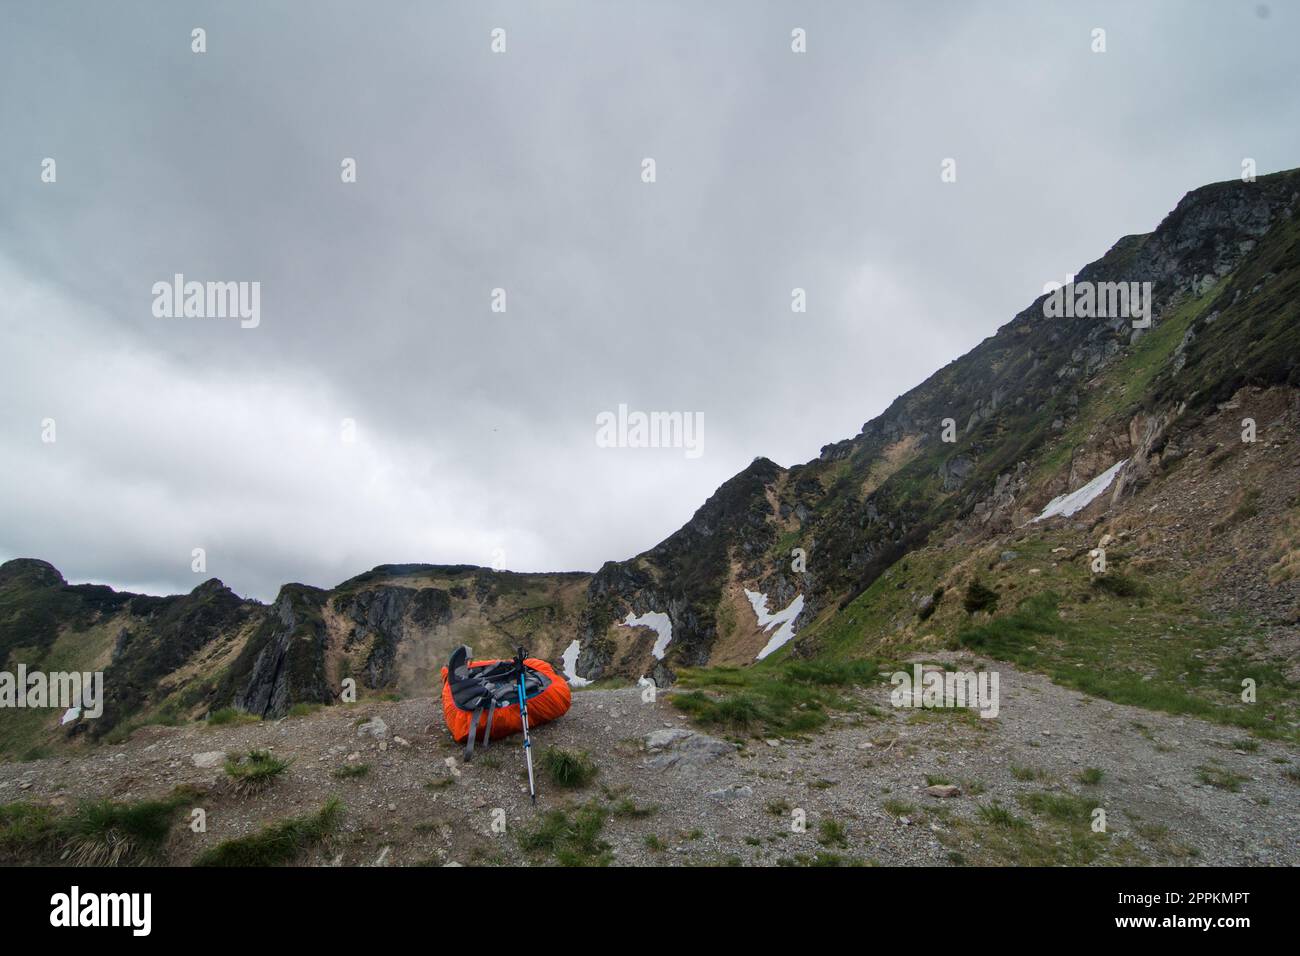 Campingausrüstung am Rand der Berglandschaft Foto Stockfoto